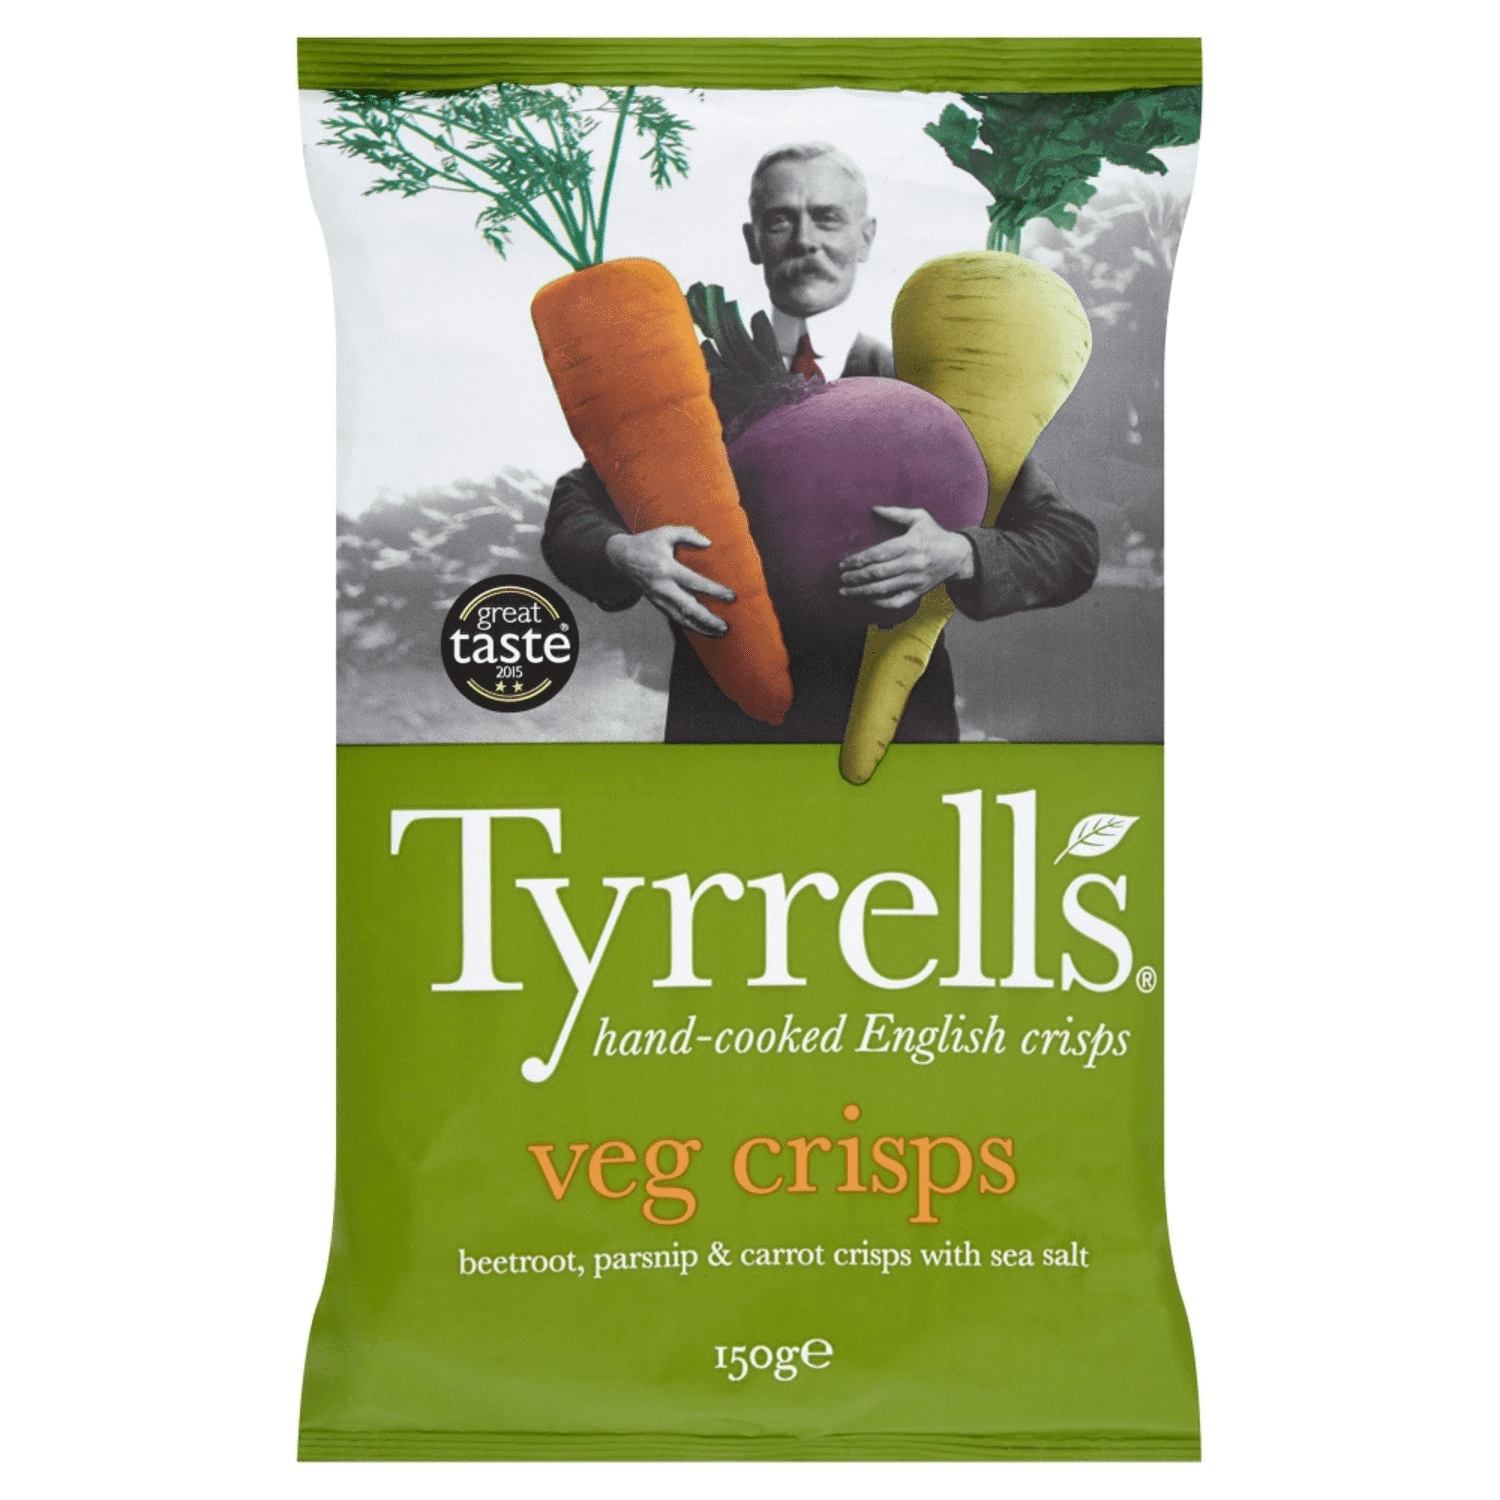 Chips veg crips 150g - TYRRELL'S